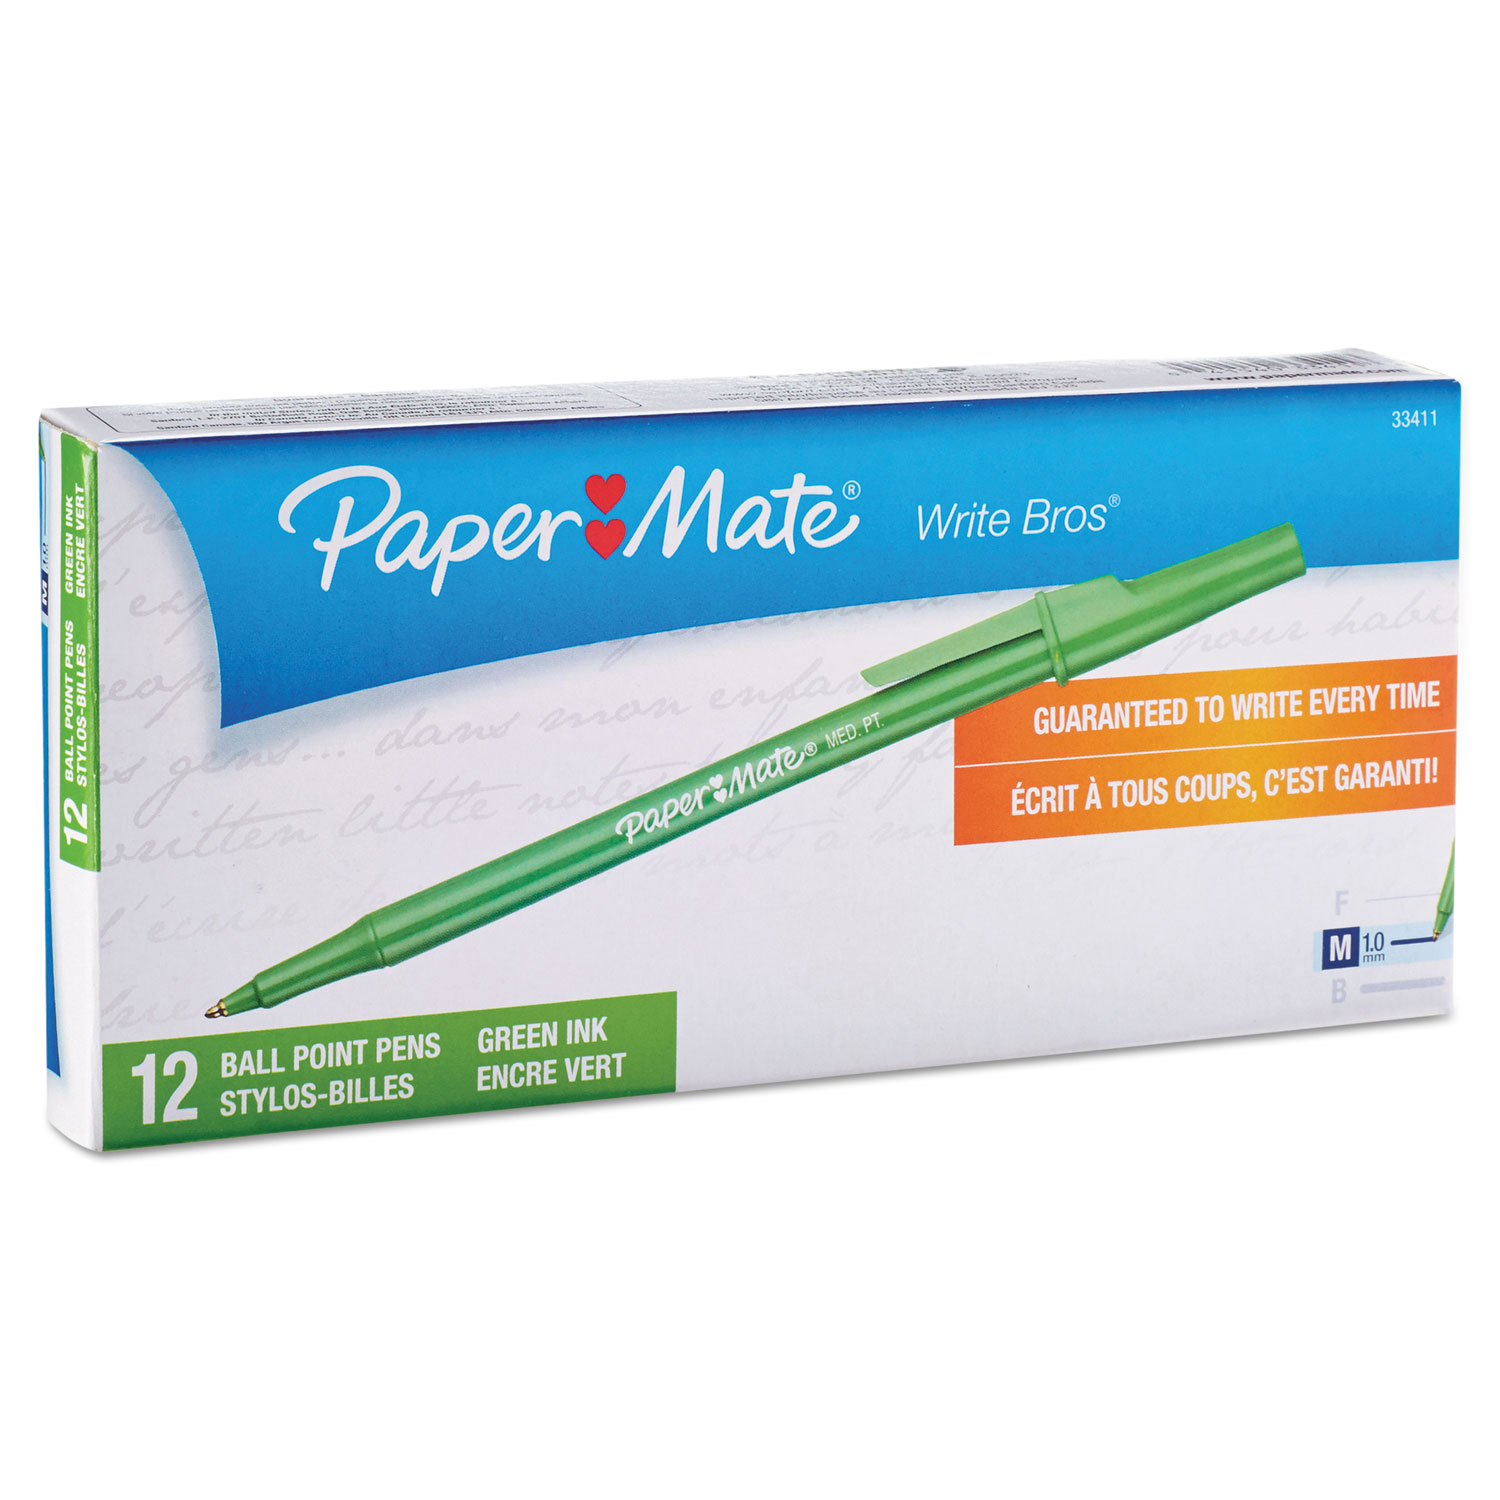  Paper Mate 3341131 Write Bros. Stick Ballpoint Pen, Medium 1mm, Green Ink/Barrel, Dozen (PAP3341131) 